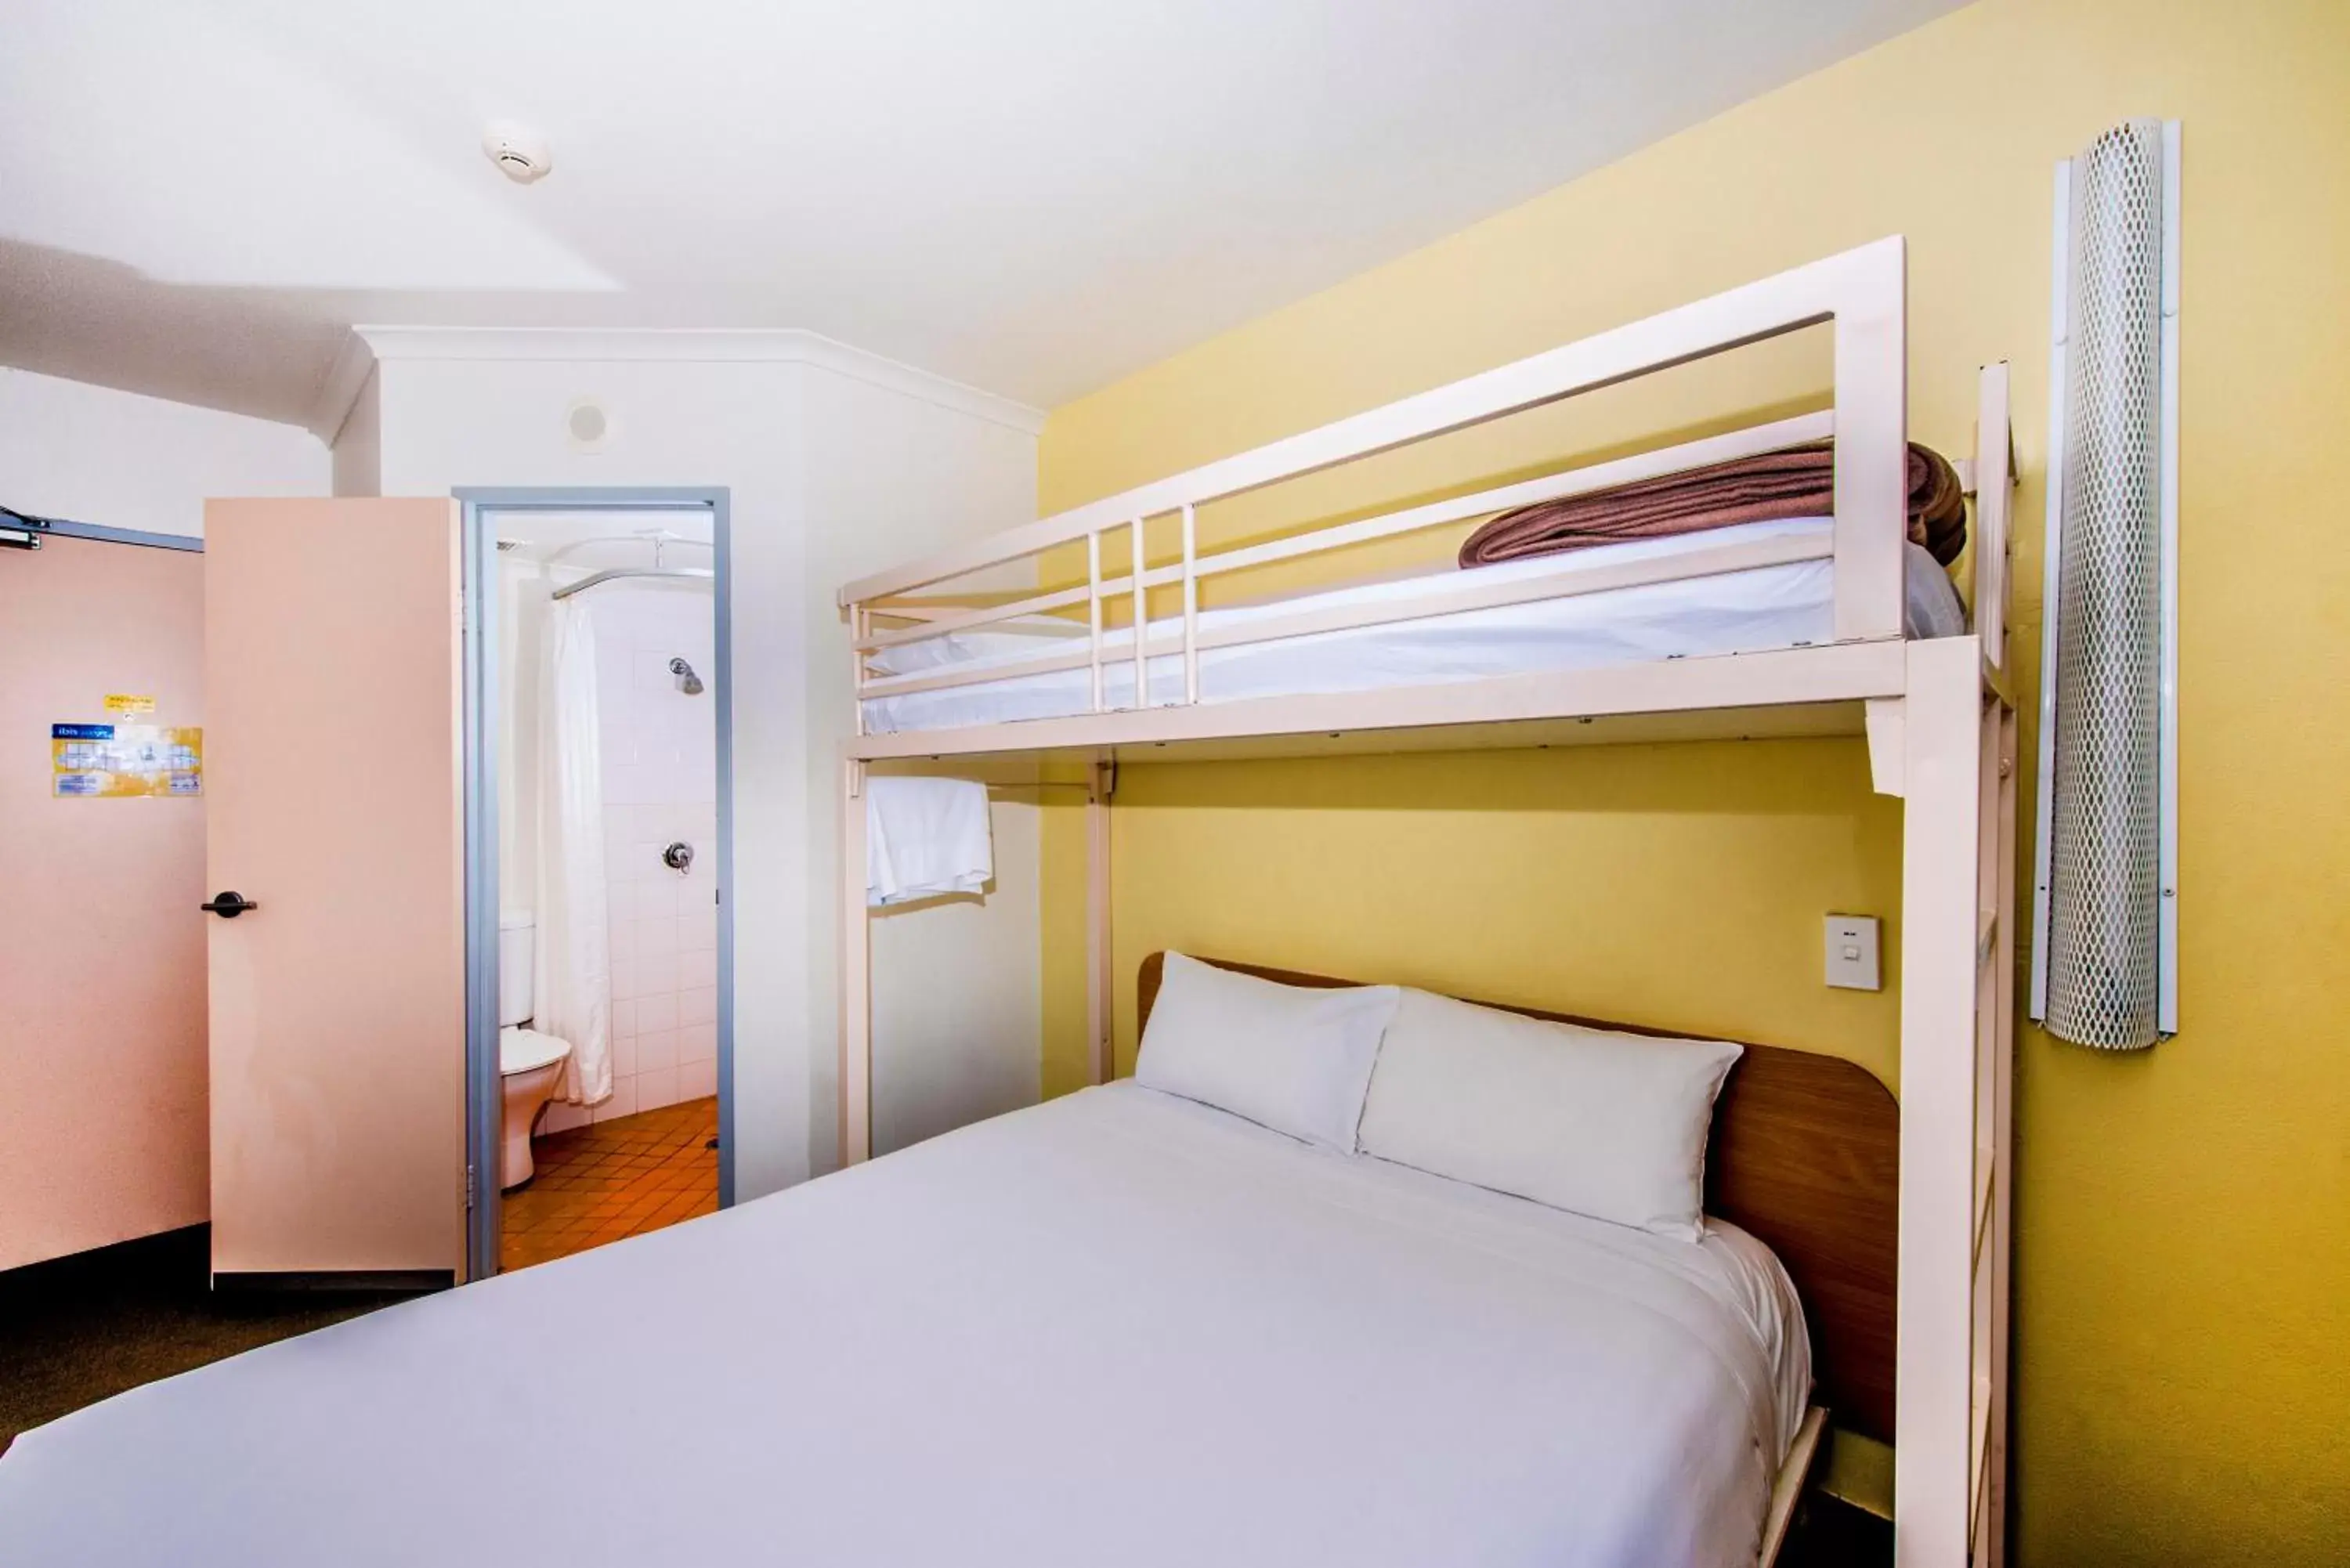 Bedroom, Bunk Bed in ibis Budget - Dubbo